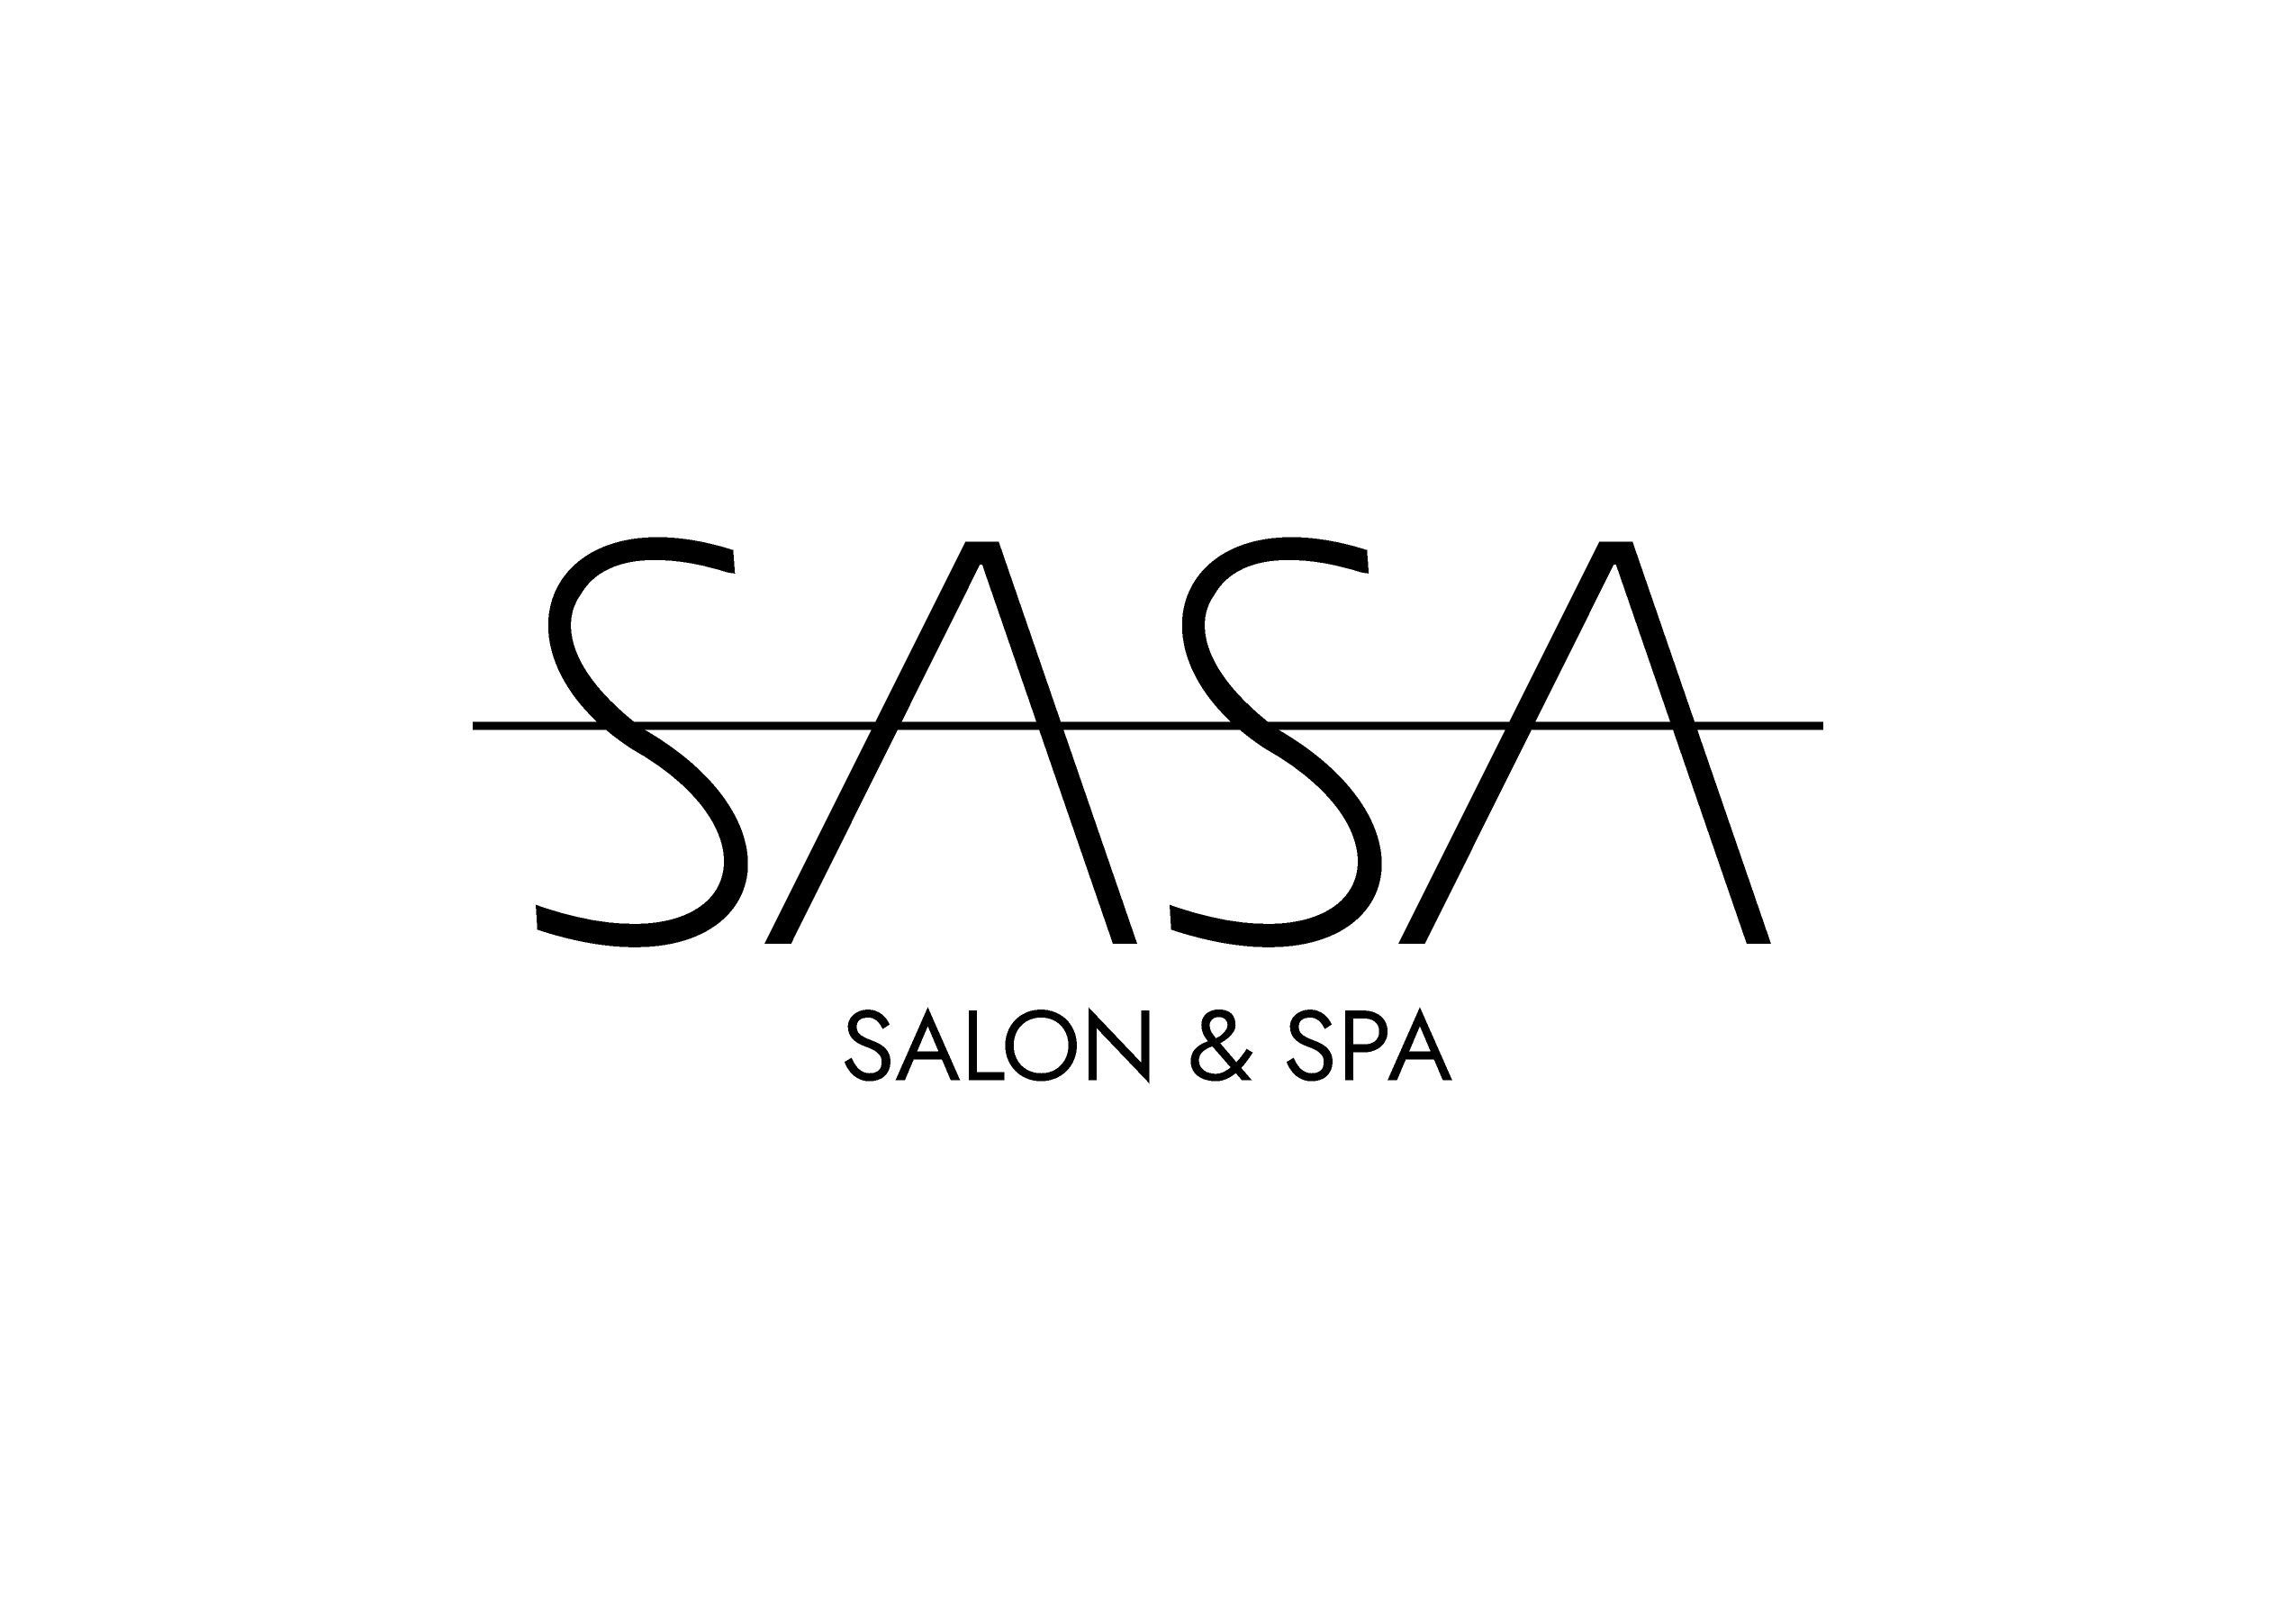 SASA Salon & Spa